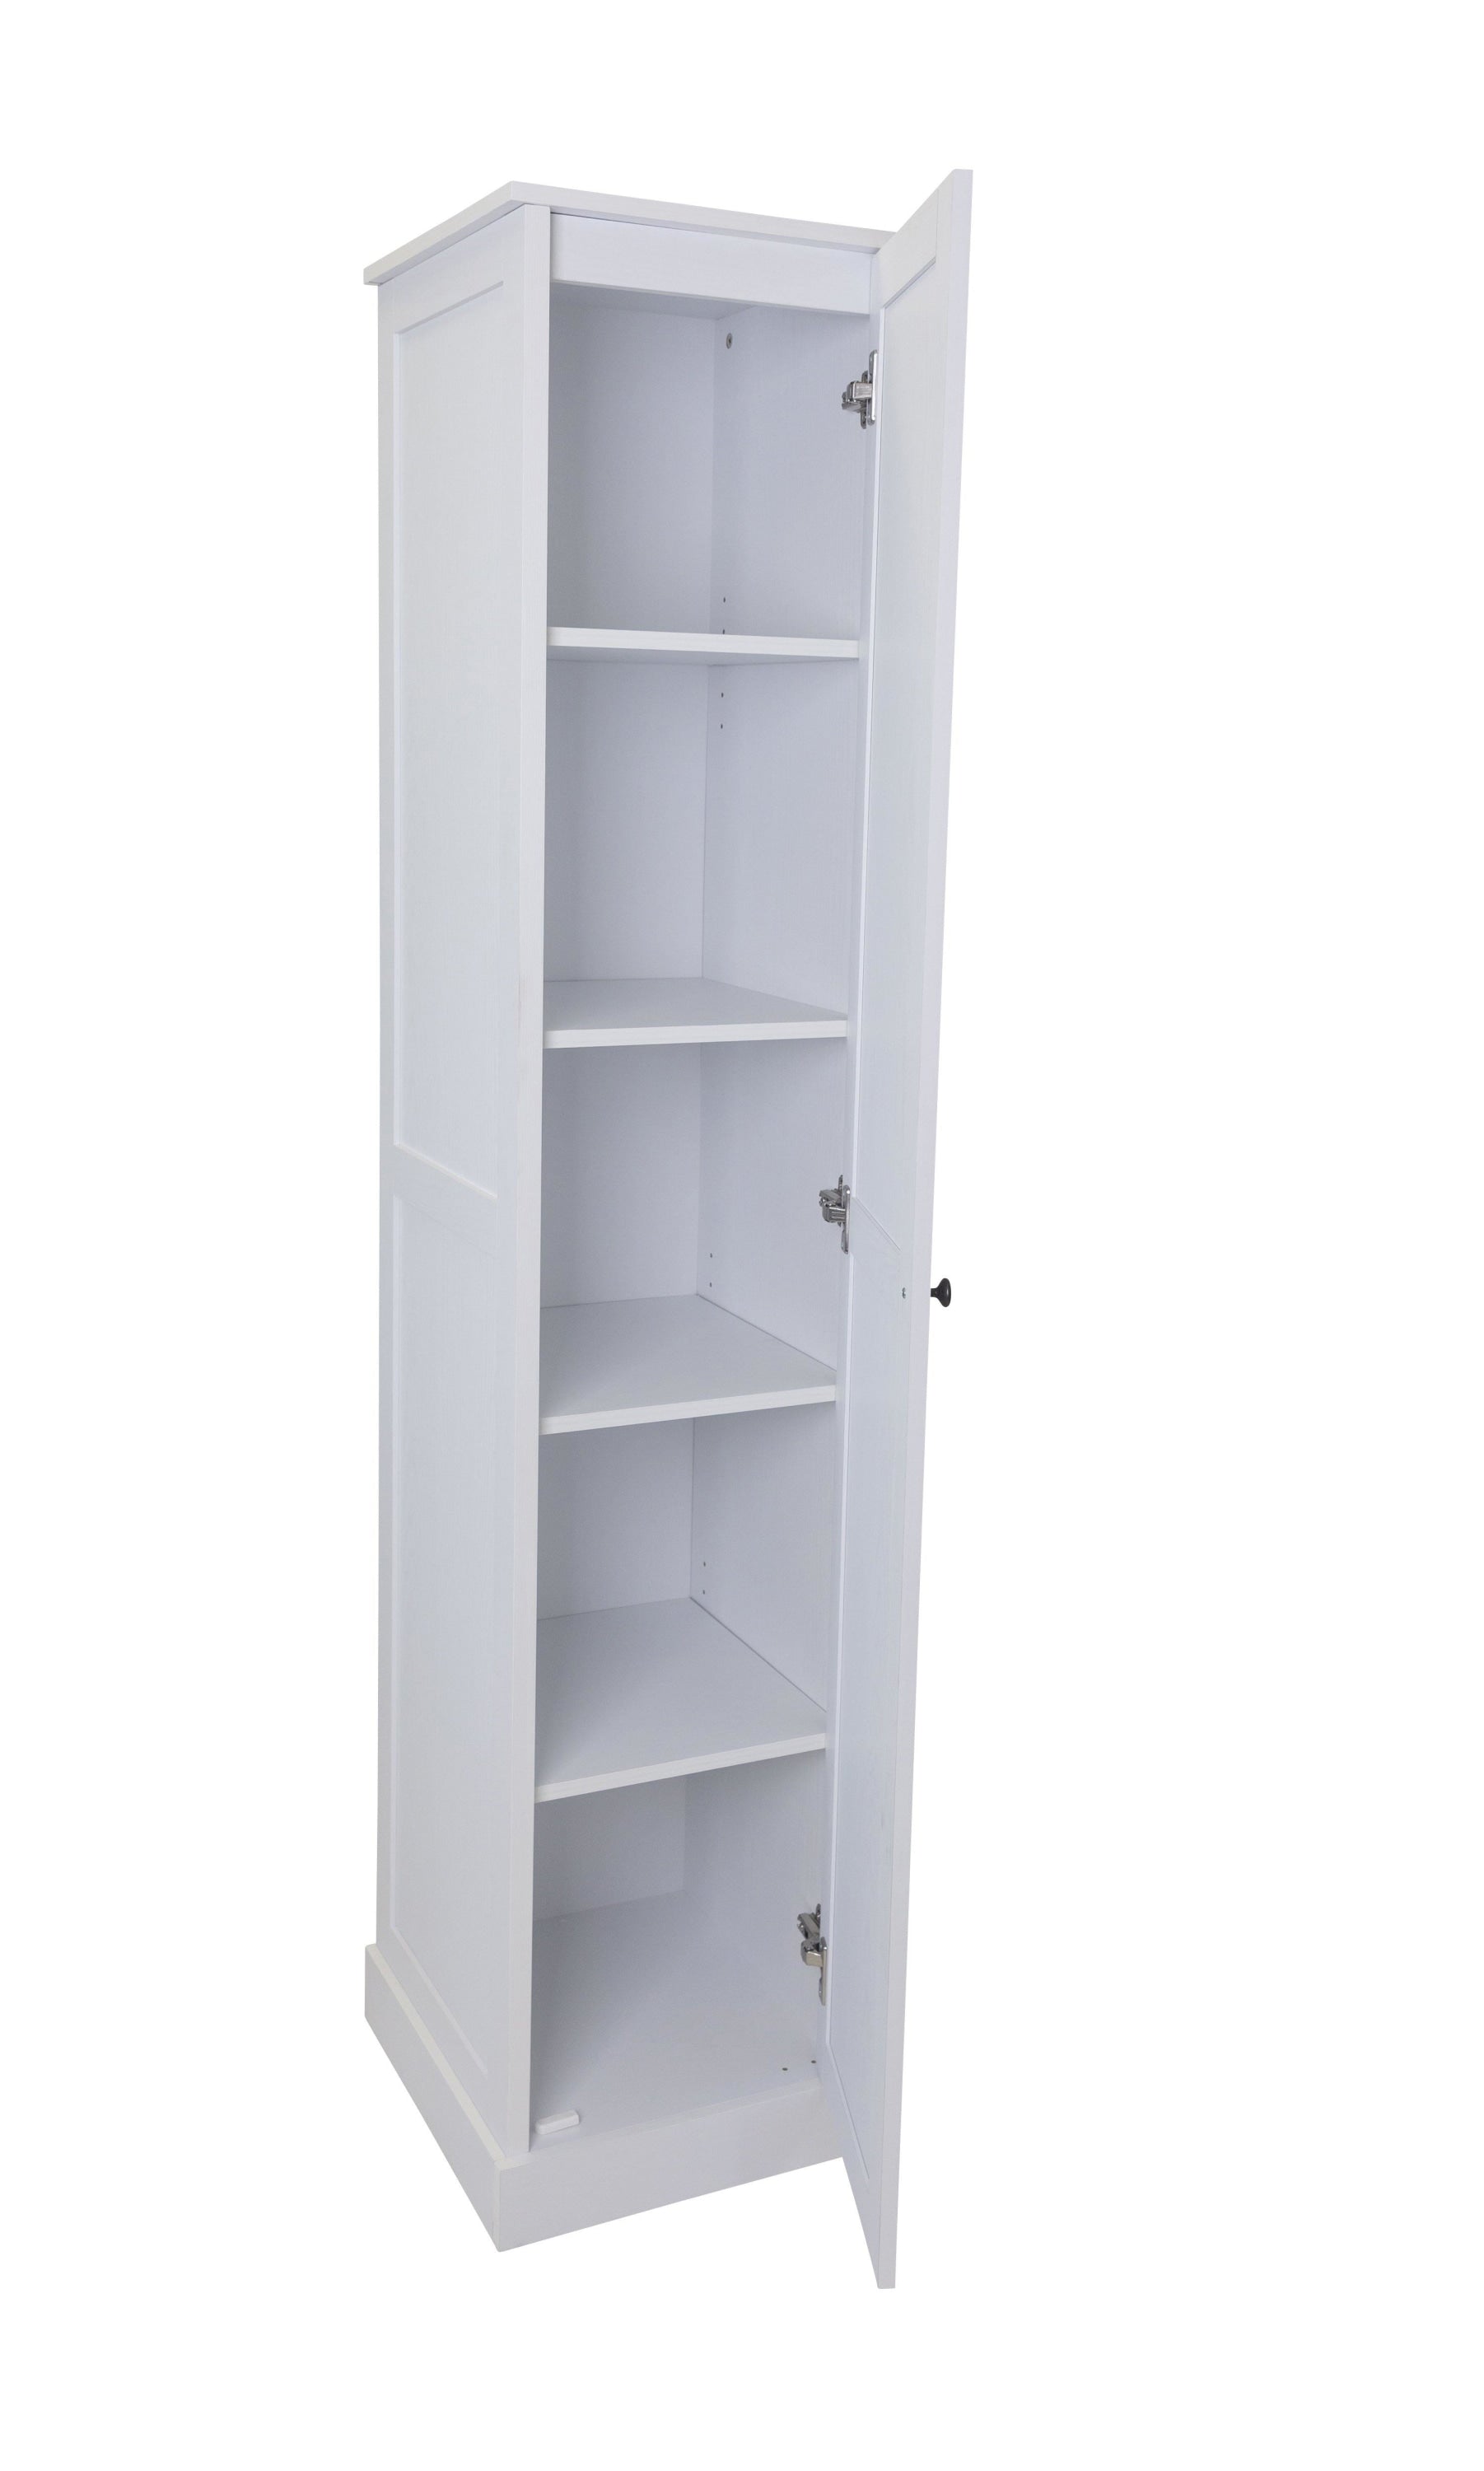 Hamptons 1 Door 5 Tier Shelf Multipurpose Cupboard White